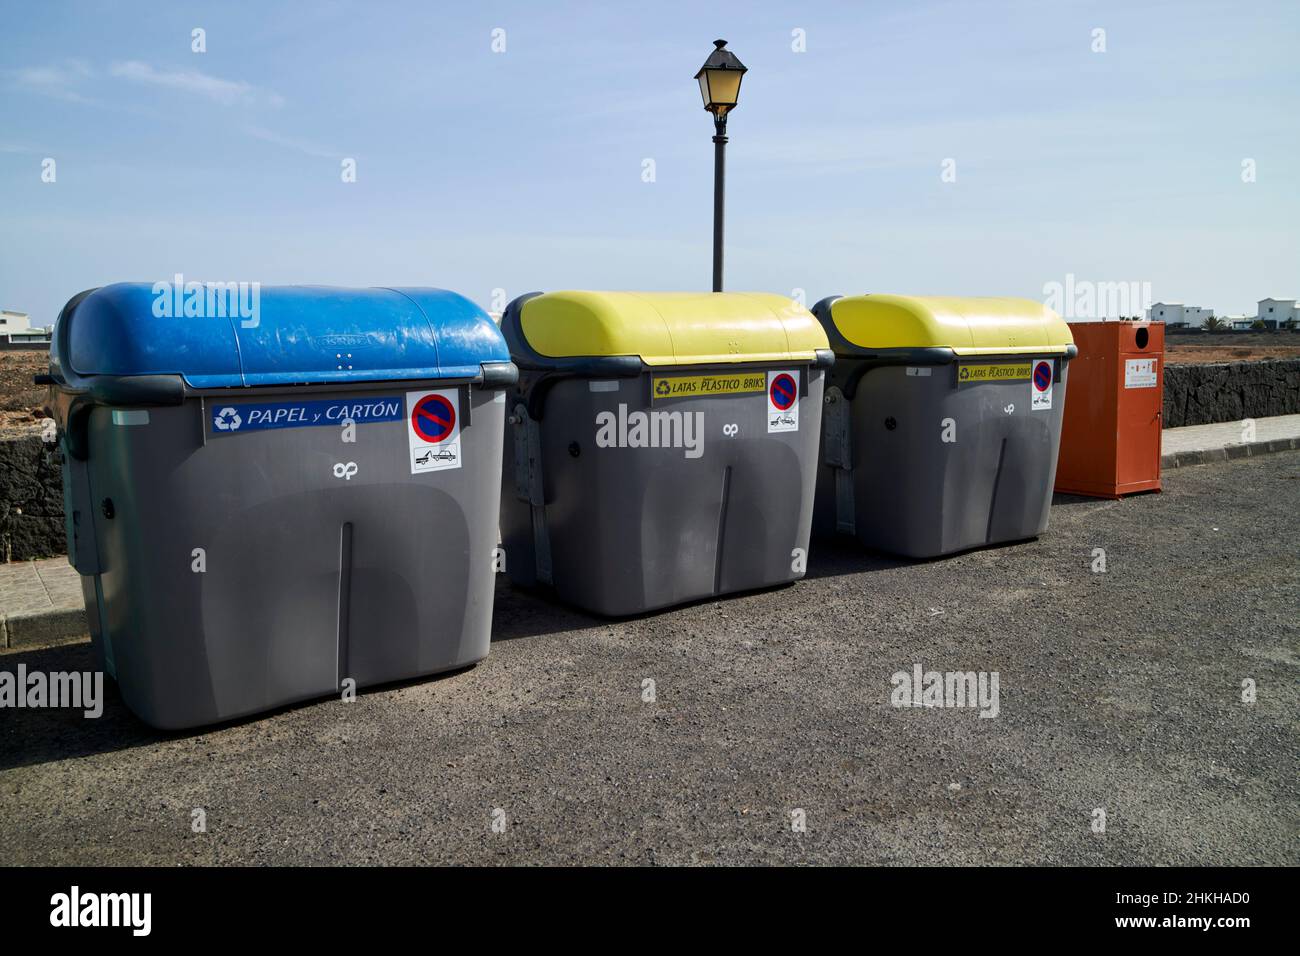 Große gewerbliche Wohnanlage Recycling-Behälter in beliebten touristischen und Wohnanlage playa blanca Lanzarote Kanarische Inseln Spanien Stockfoto